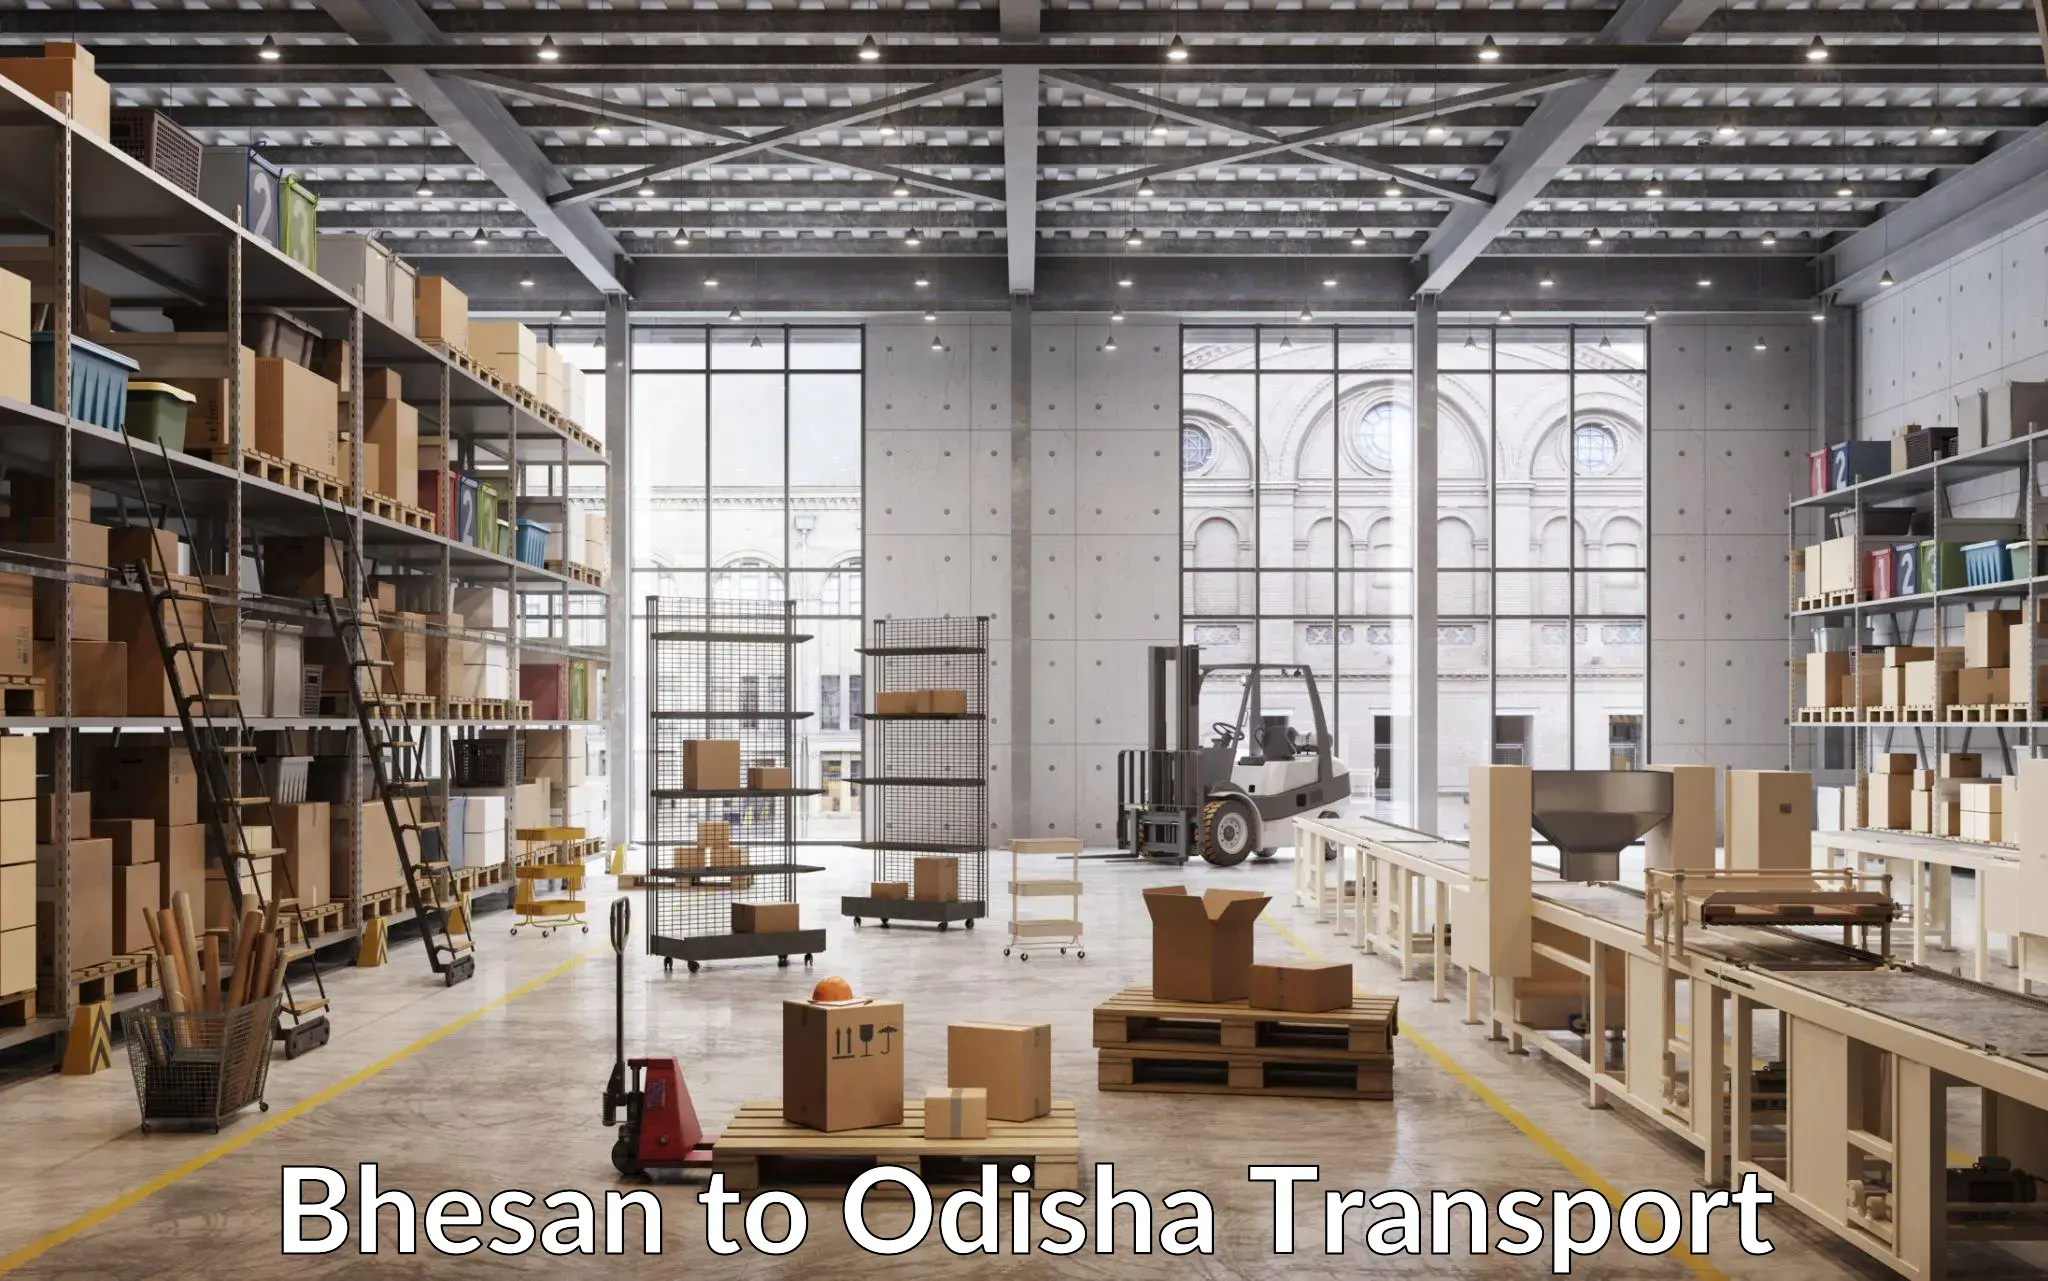 Furniture transport service Bhesan to Balikuda